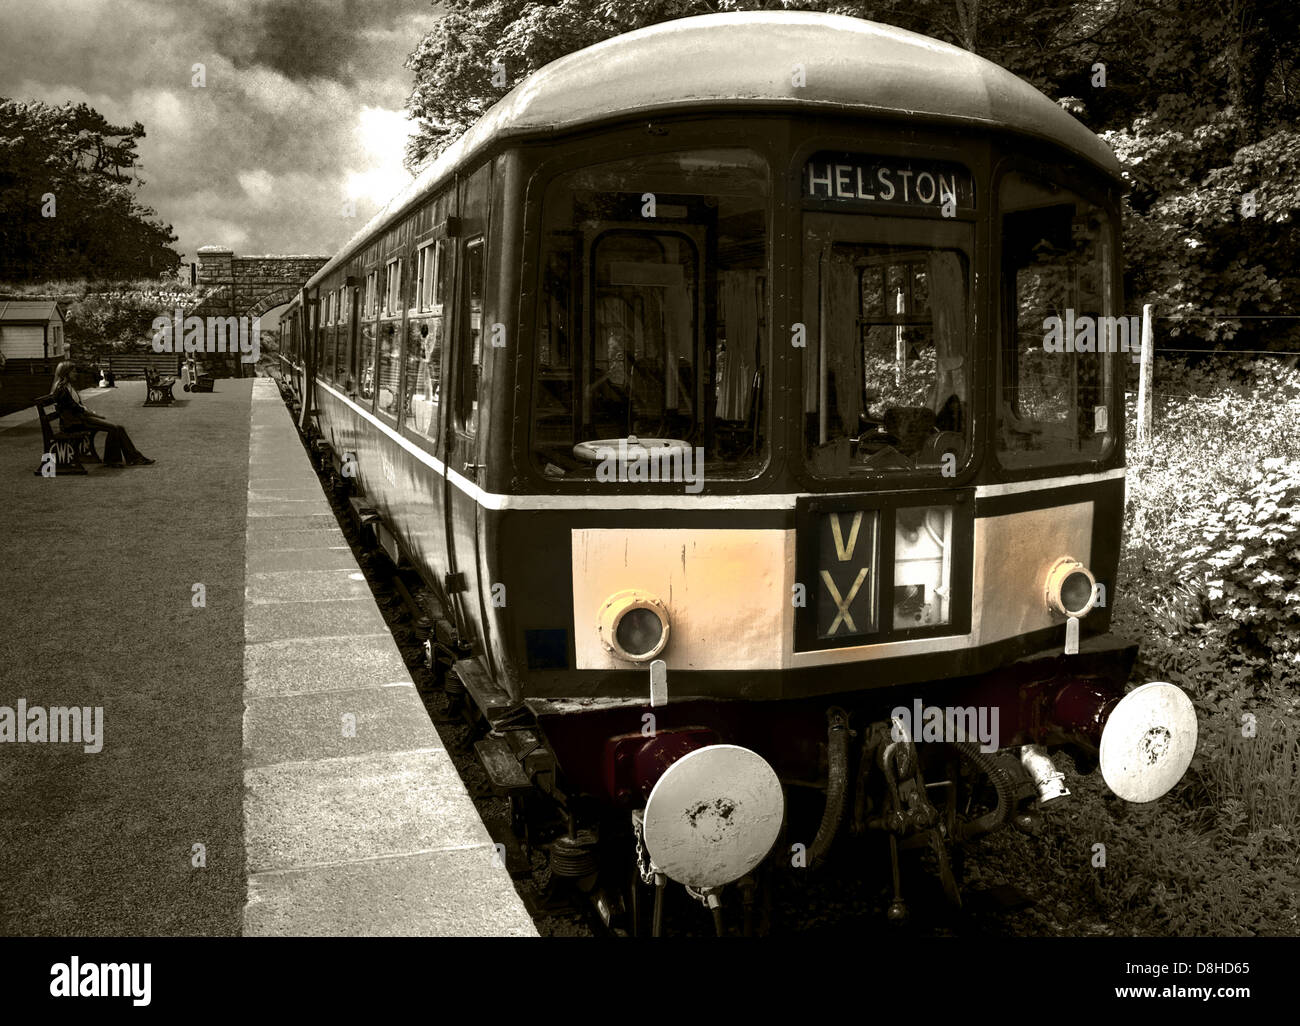 Dernier train pour Helston VX, Cornwall, Angleterre, Royaume-Uni, TR13 8PT Banque D'Images